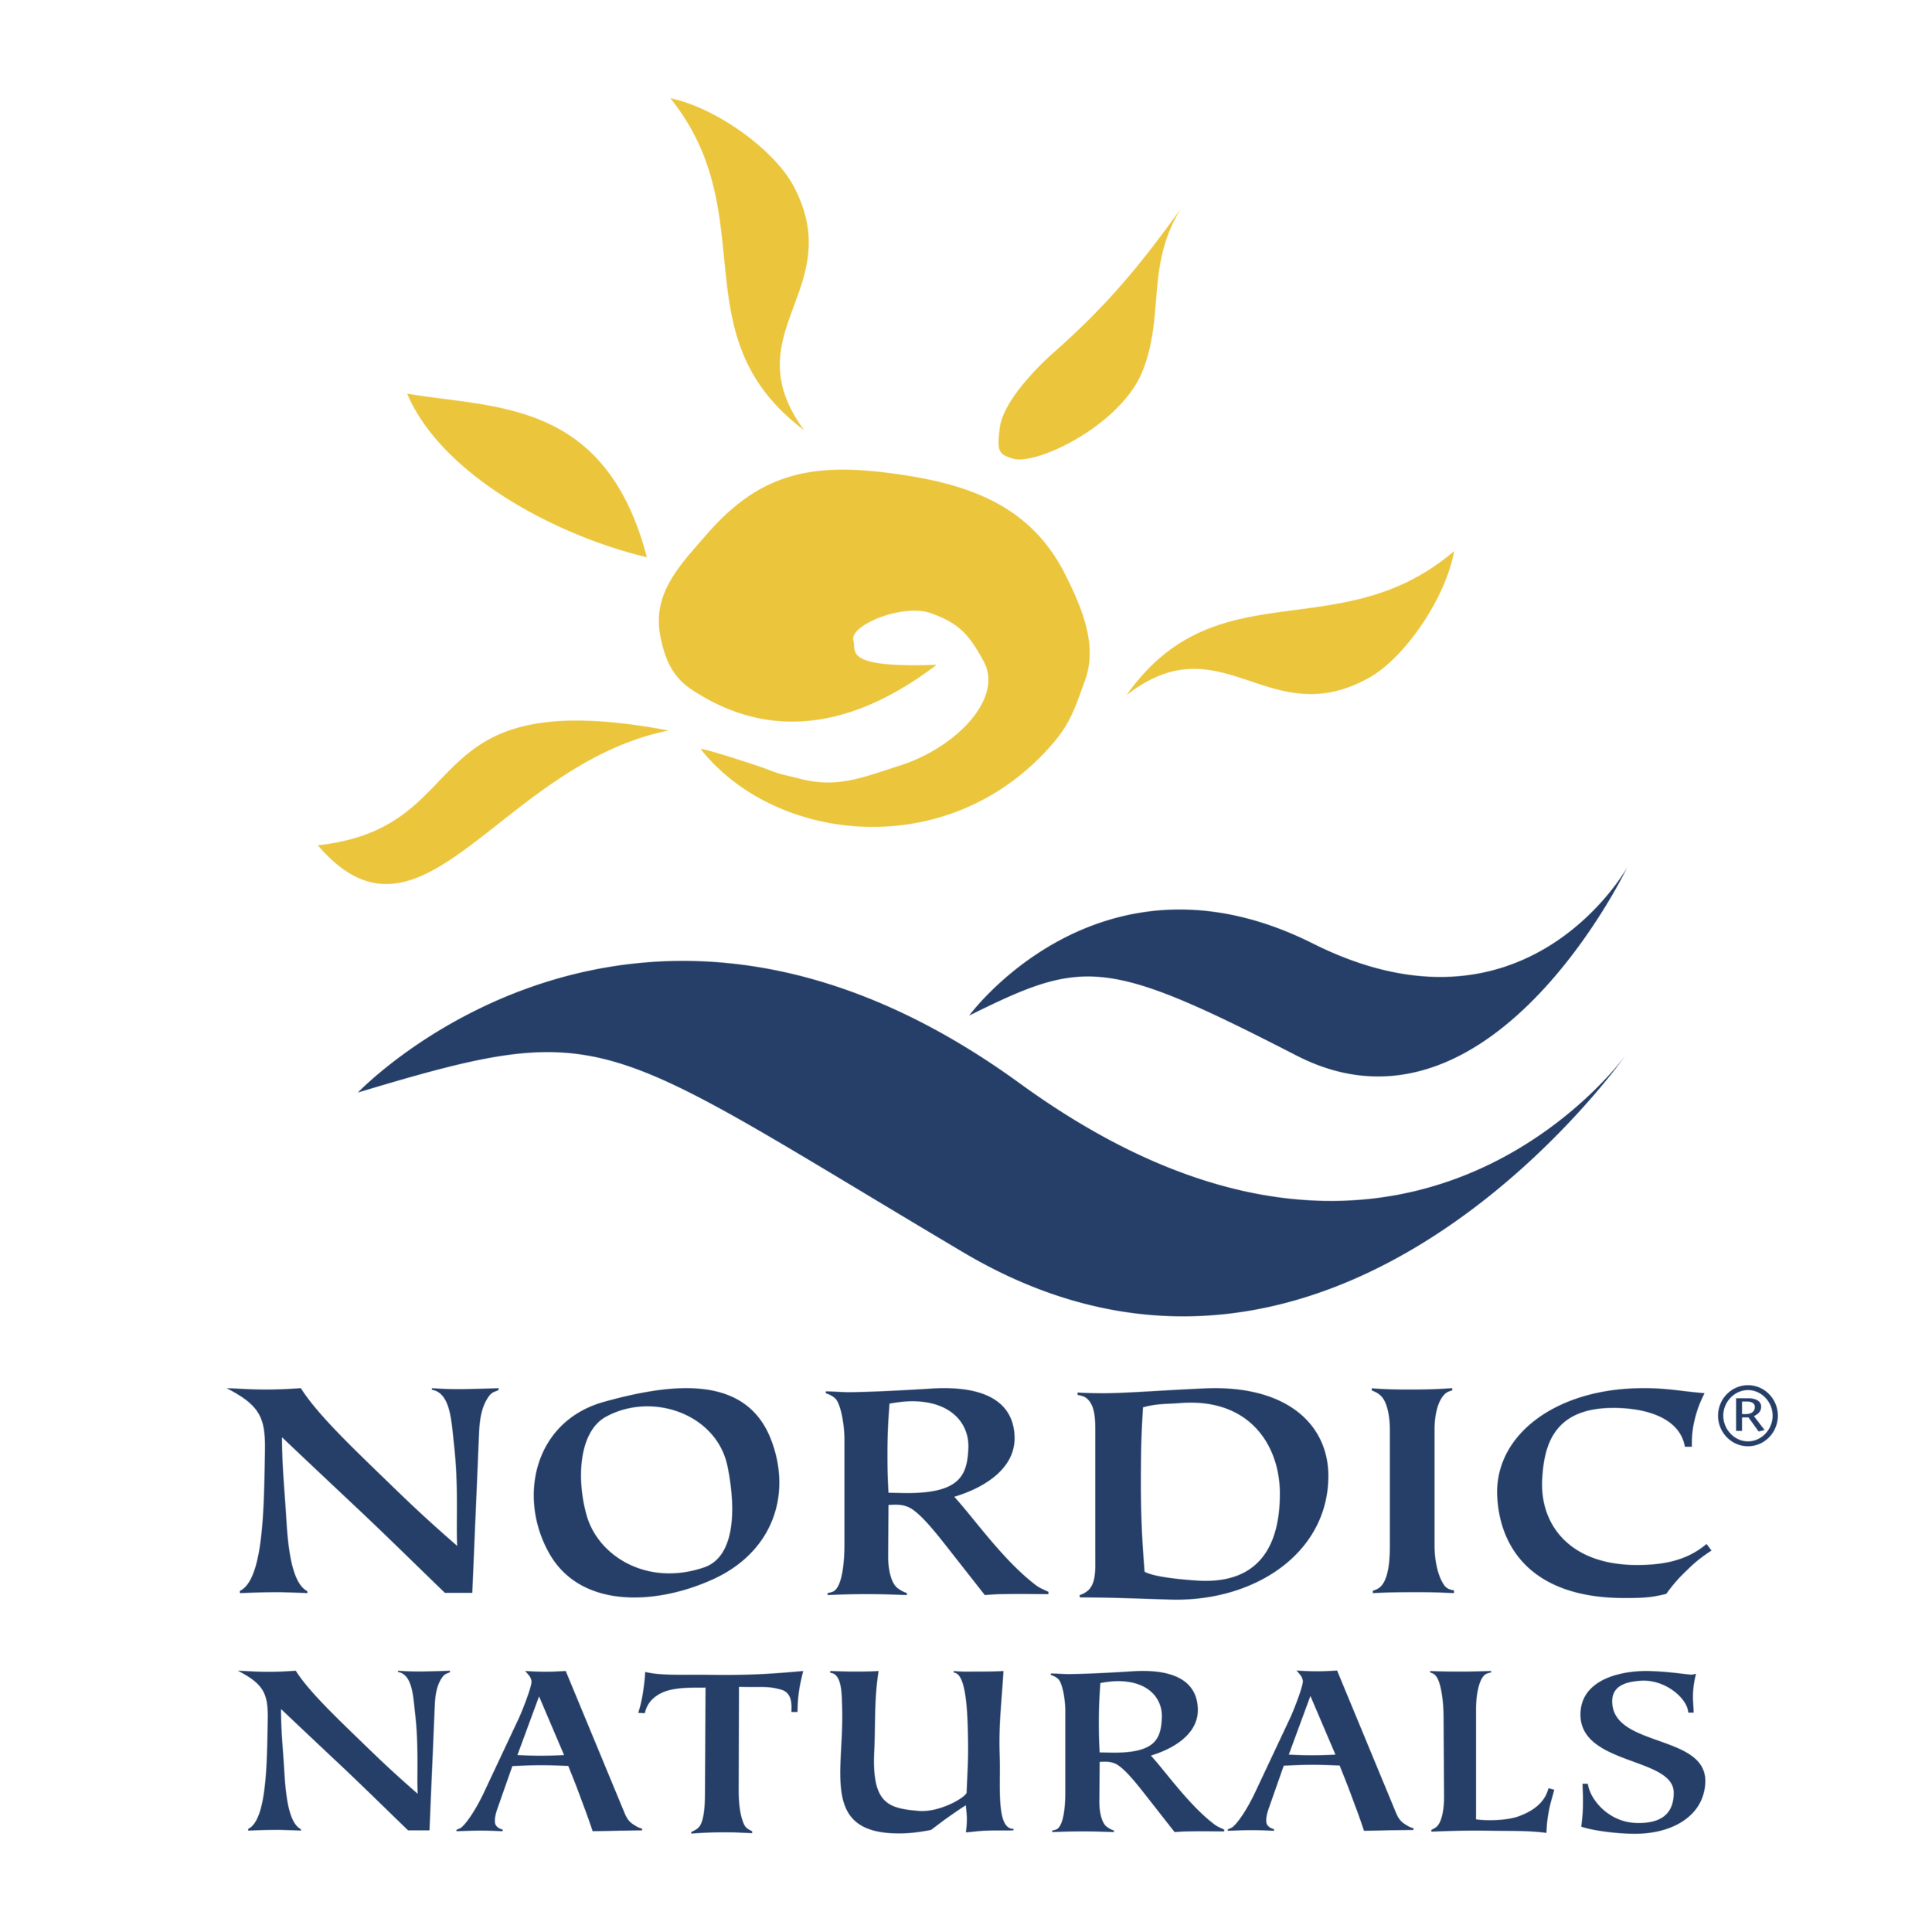 Nordic Naturals logo.png